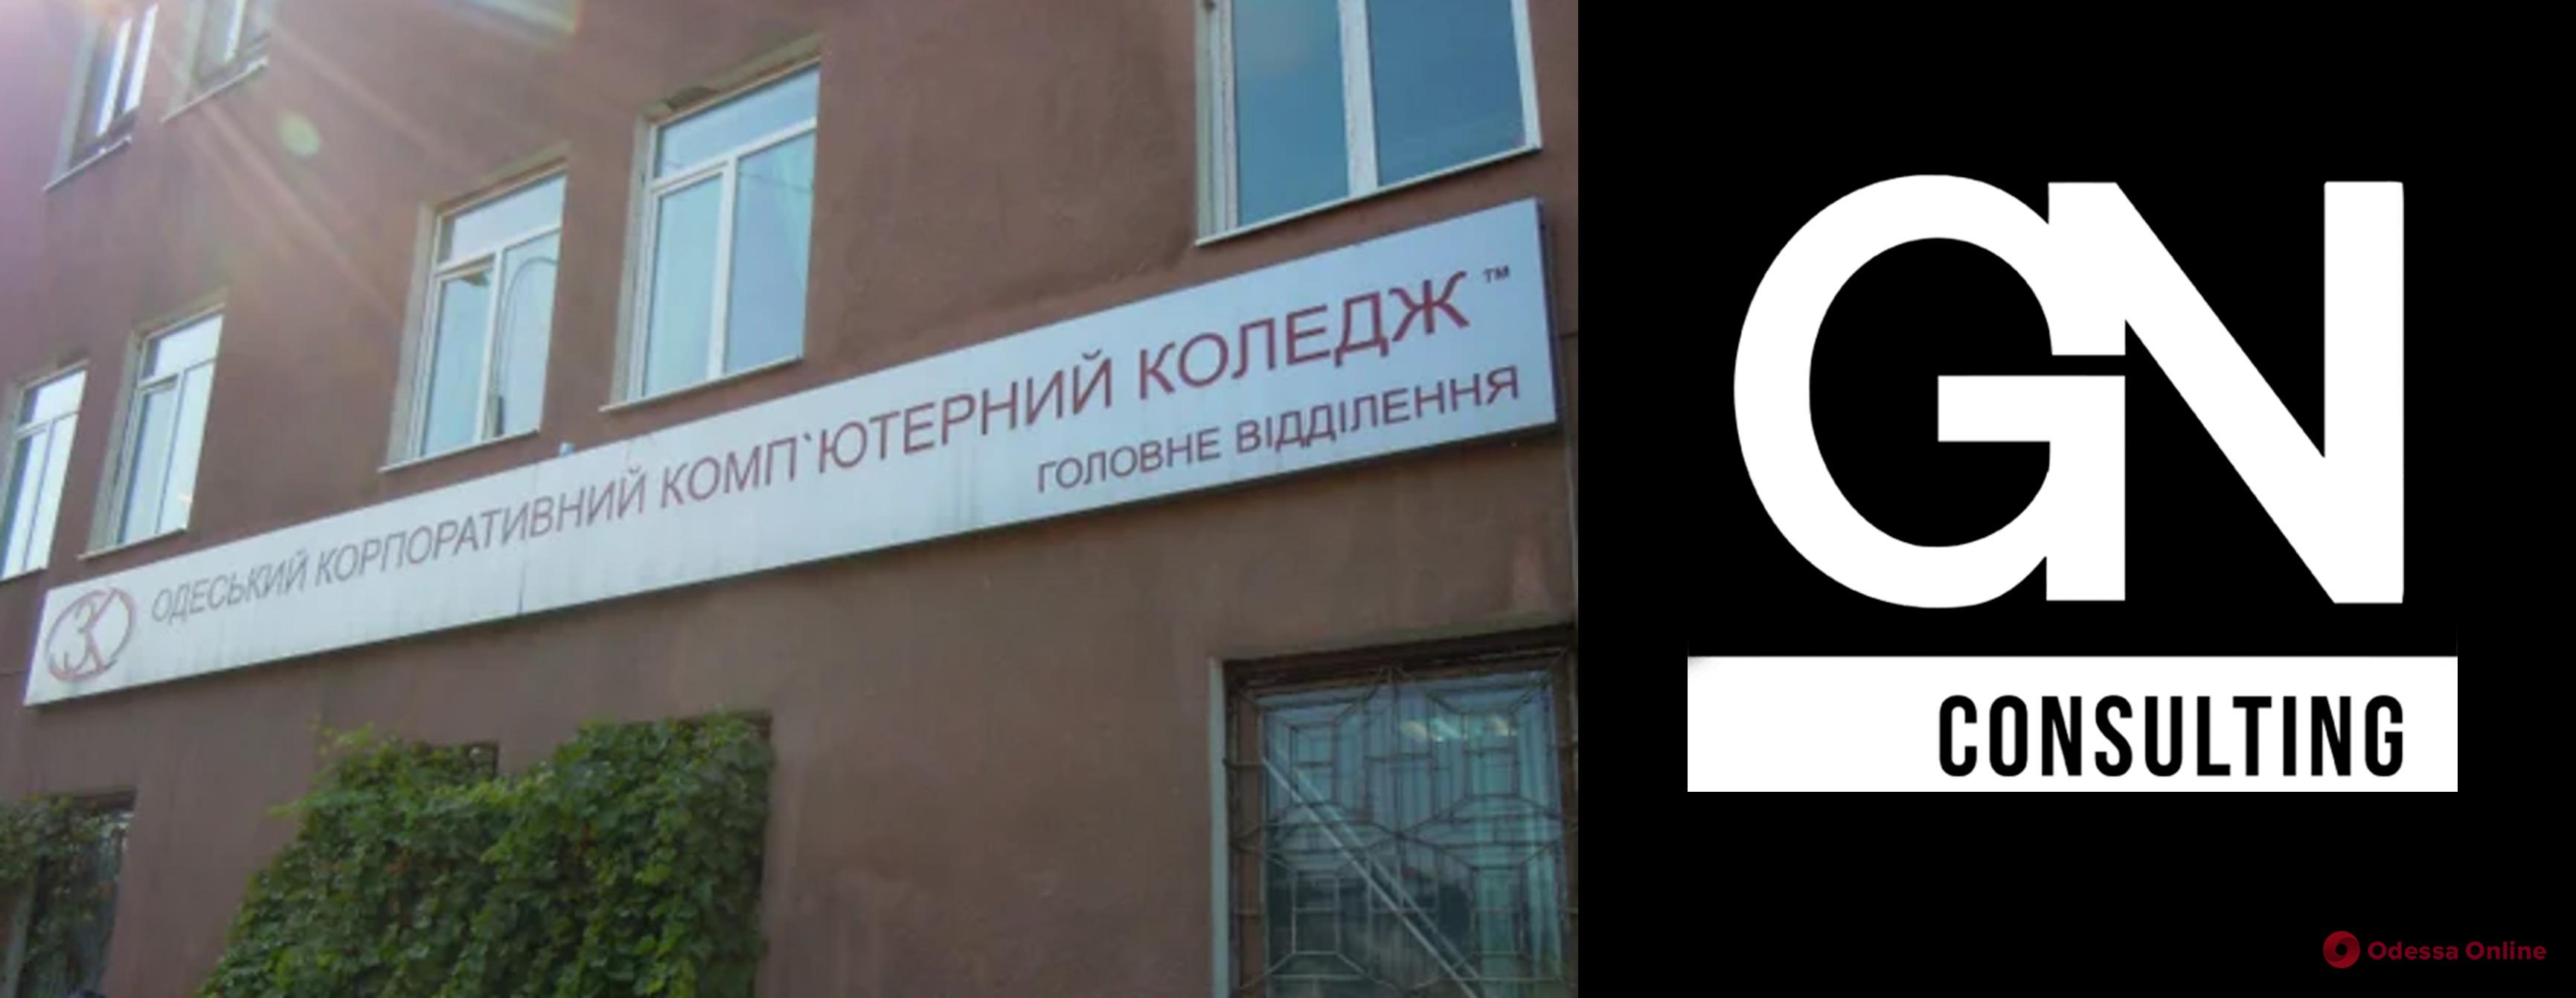 В Одессе для детей-переселенцев будут проводить бесплатные курсы по компьютерной графике и веб-дизайну